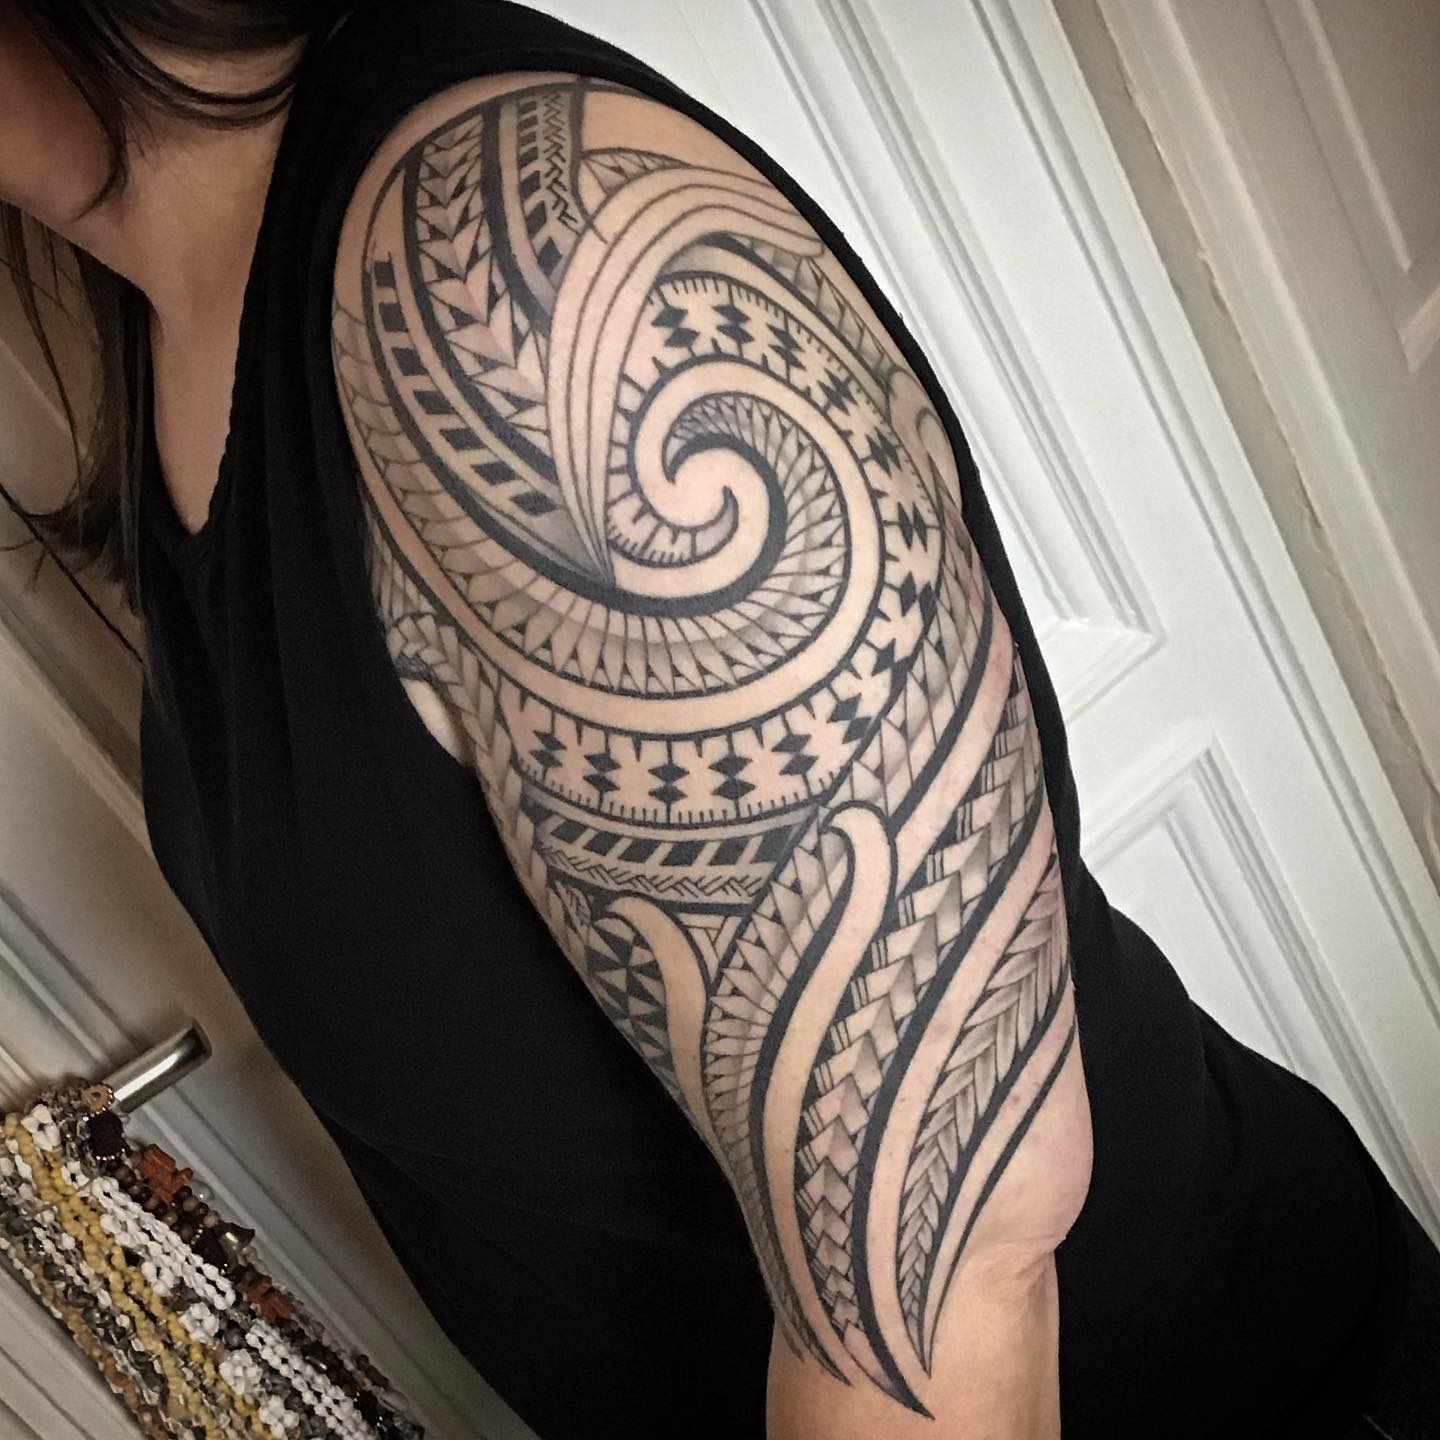 Tatuaje Maorí en Manga